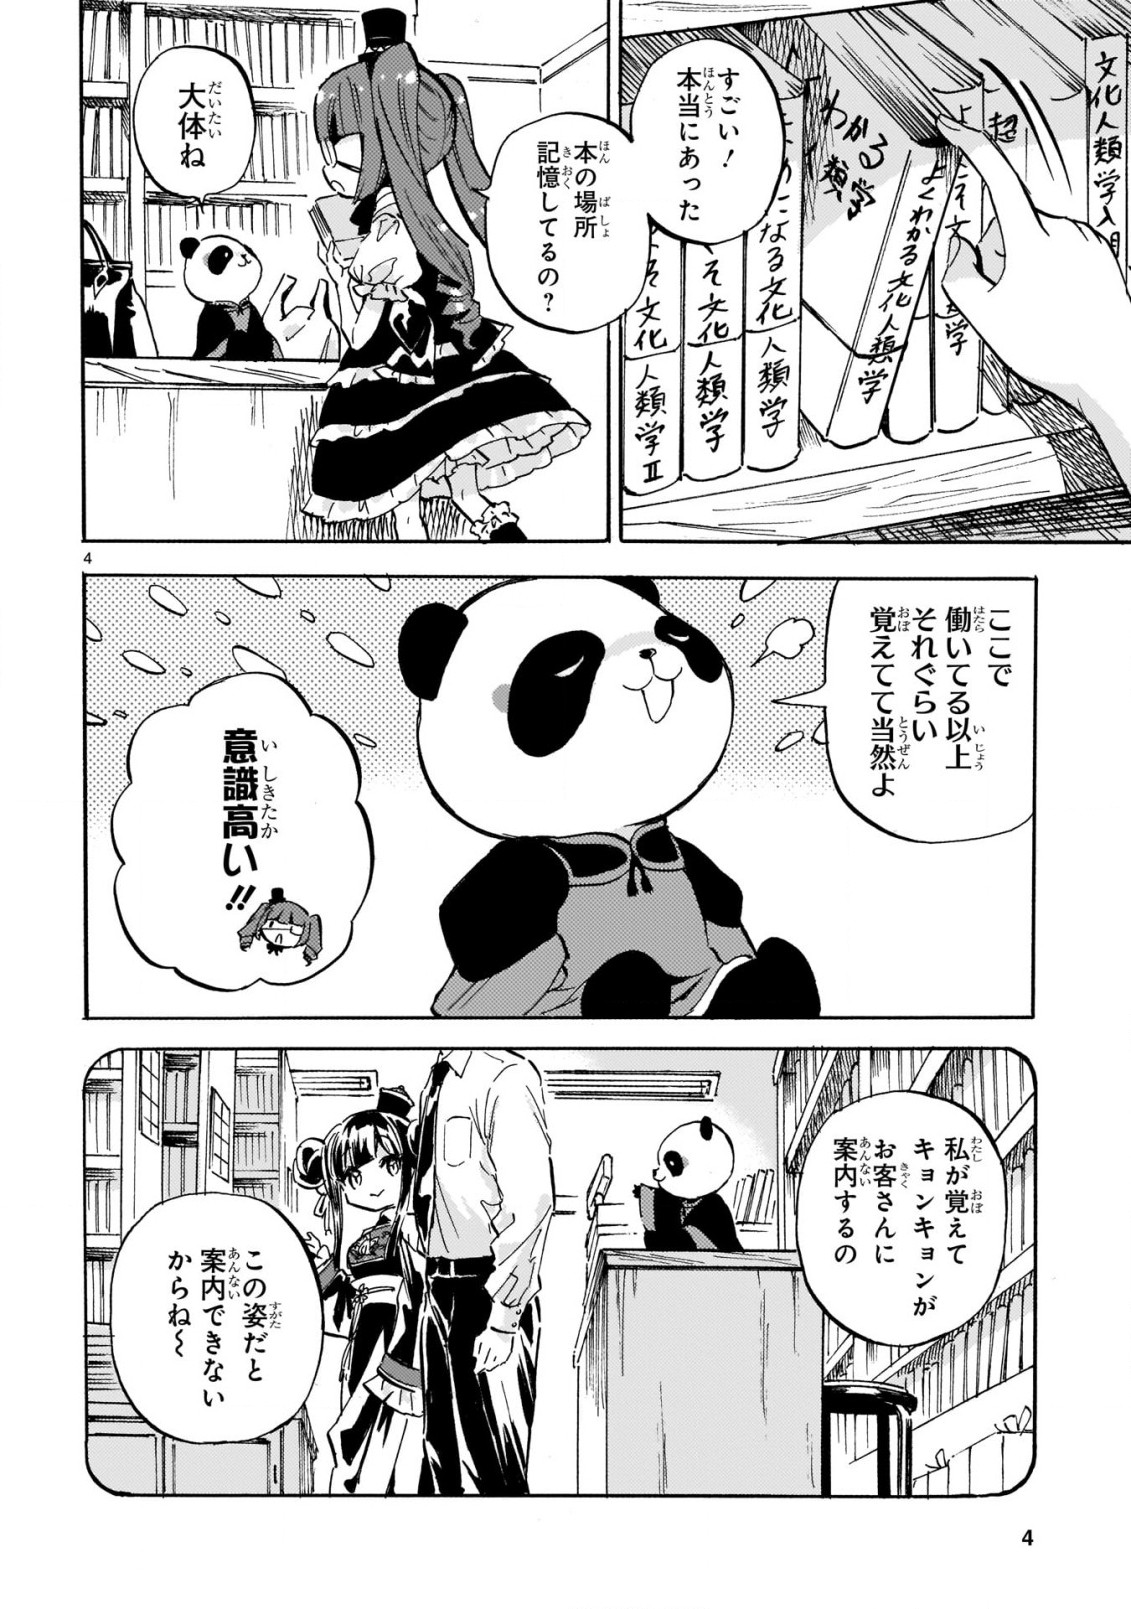 Jashin-chan Dropkick - Chapter 217 - Page 4